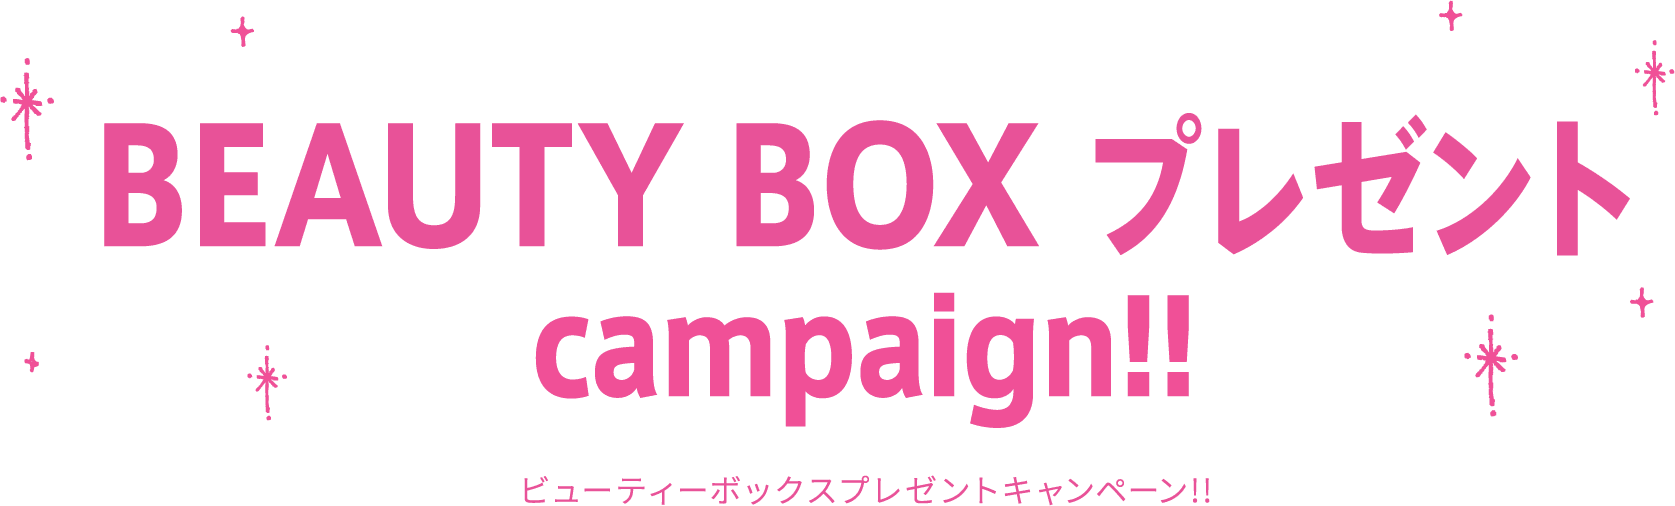 MORE! BEAUTY プレゼント campaign!! ビューティーボックスプレゼントキャンペーン!!